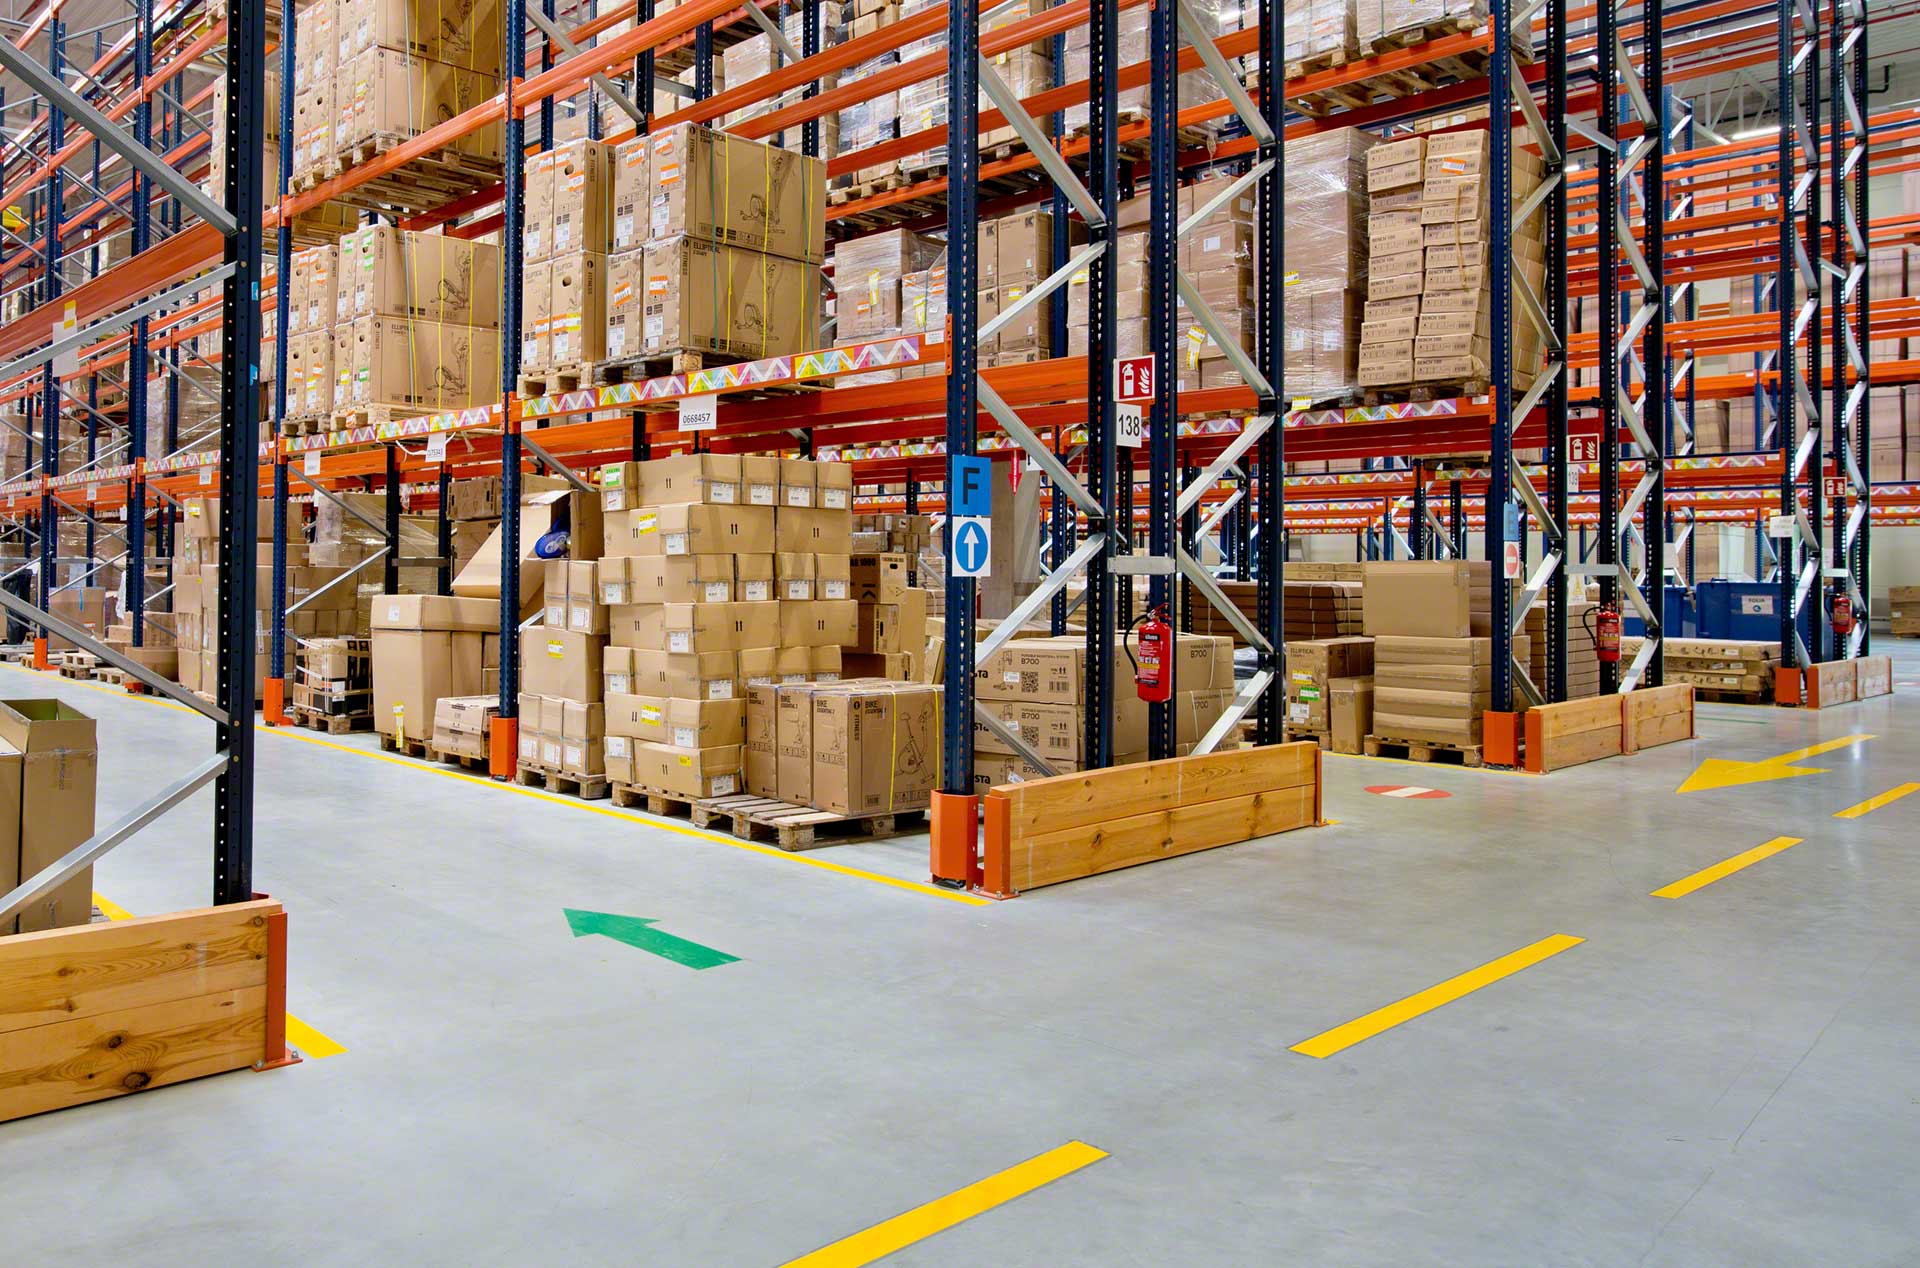 Señalización en el almacén: seguridad y protección para operarios y mercancía